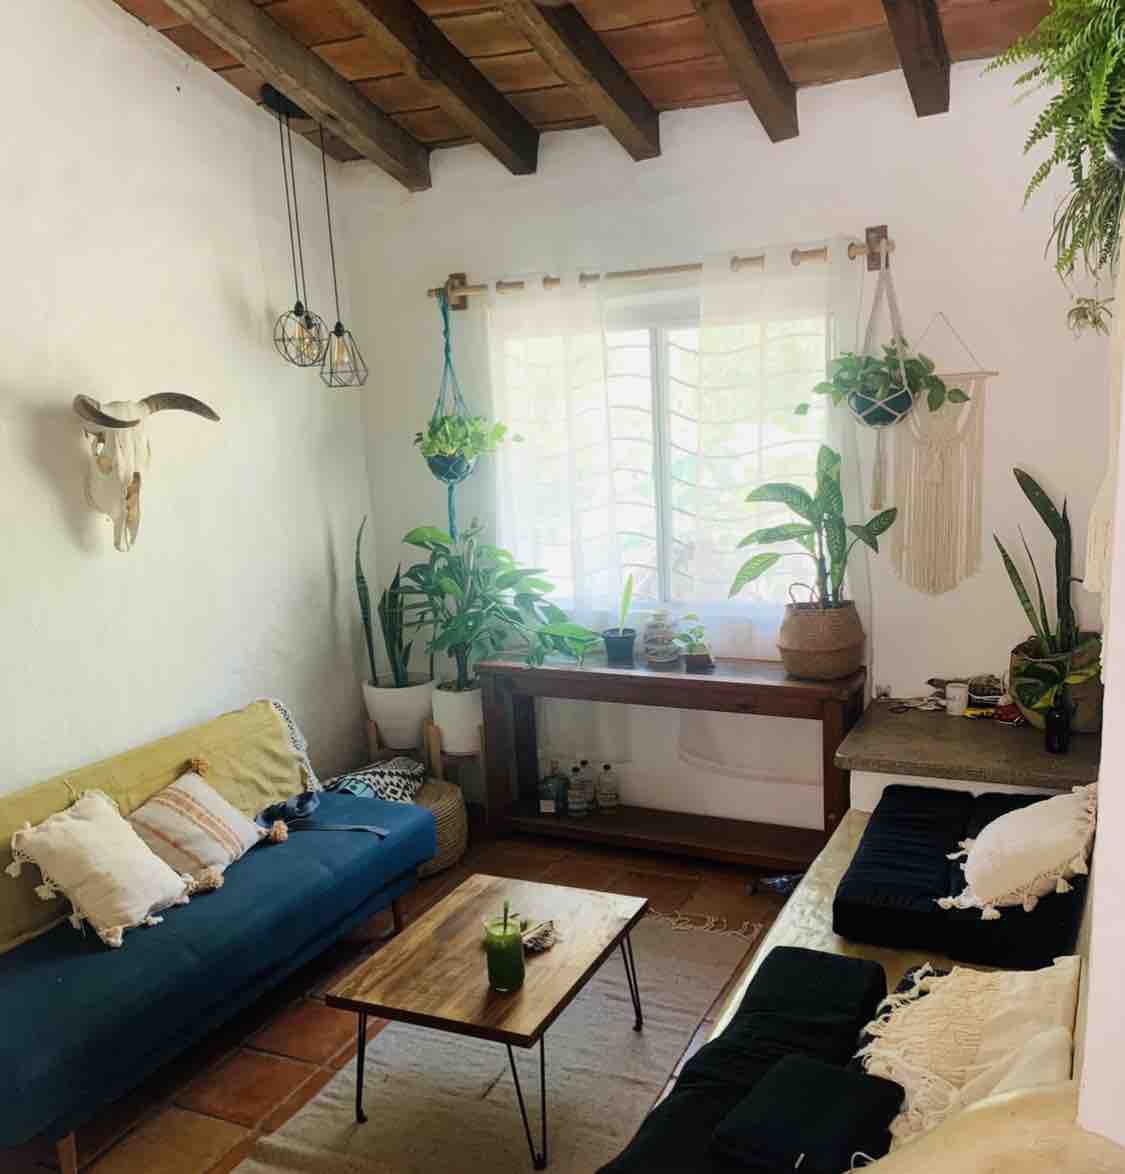 Casa De Leon: Jungle Home